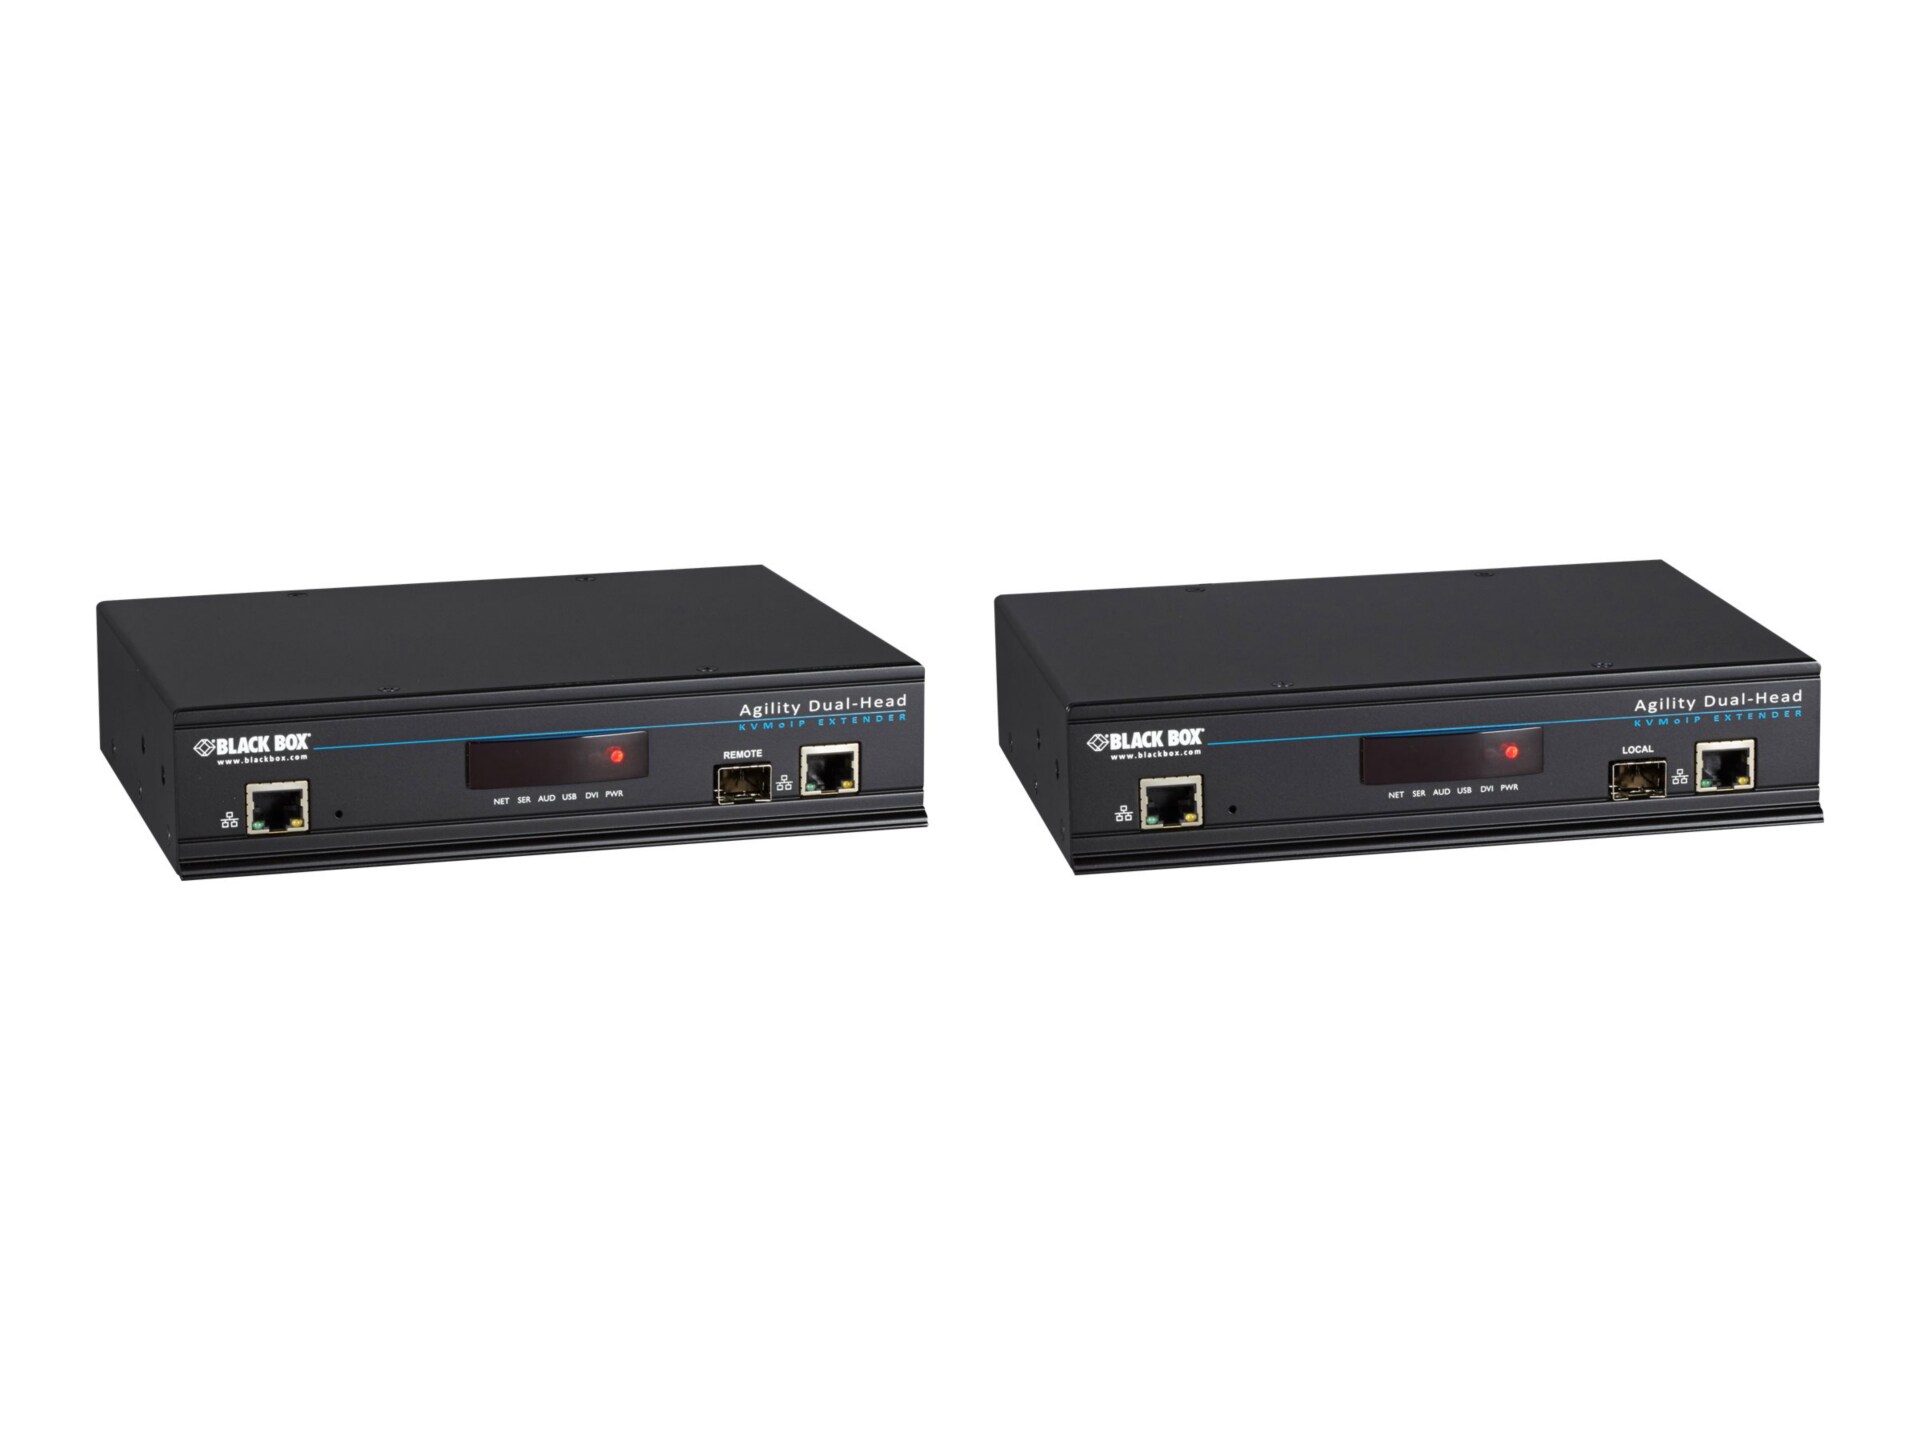 Black Box ServSwitch Agility IP-Based KVM Extender - DVI, USB, Dual-Head Ki